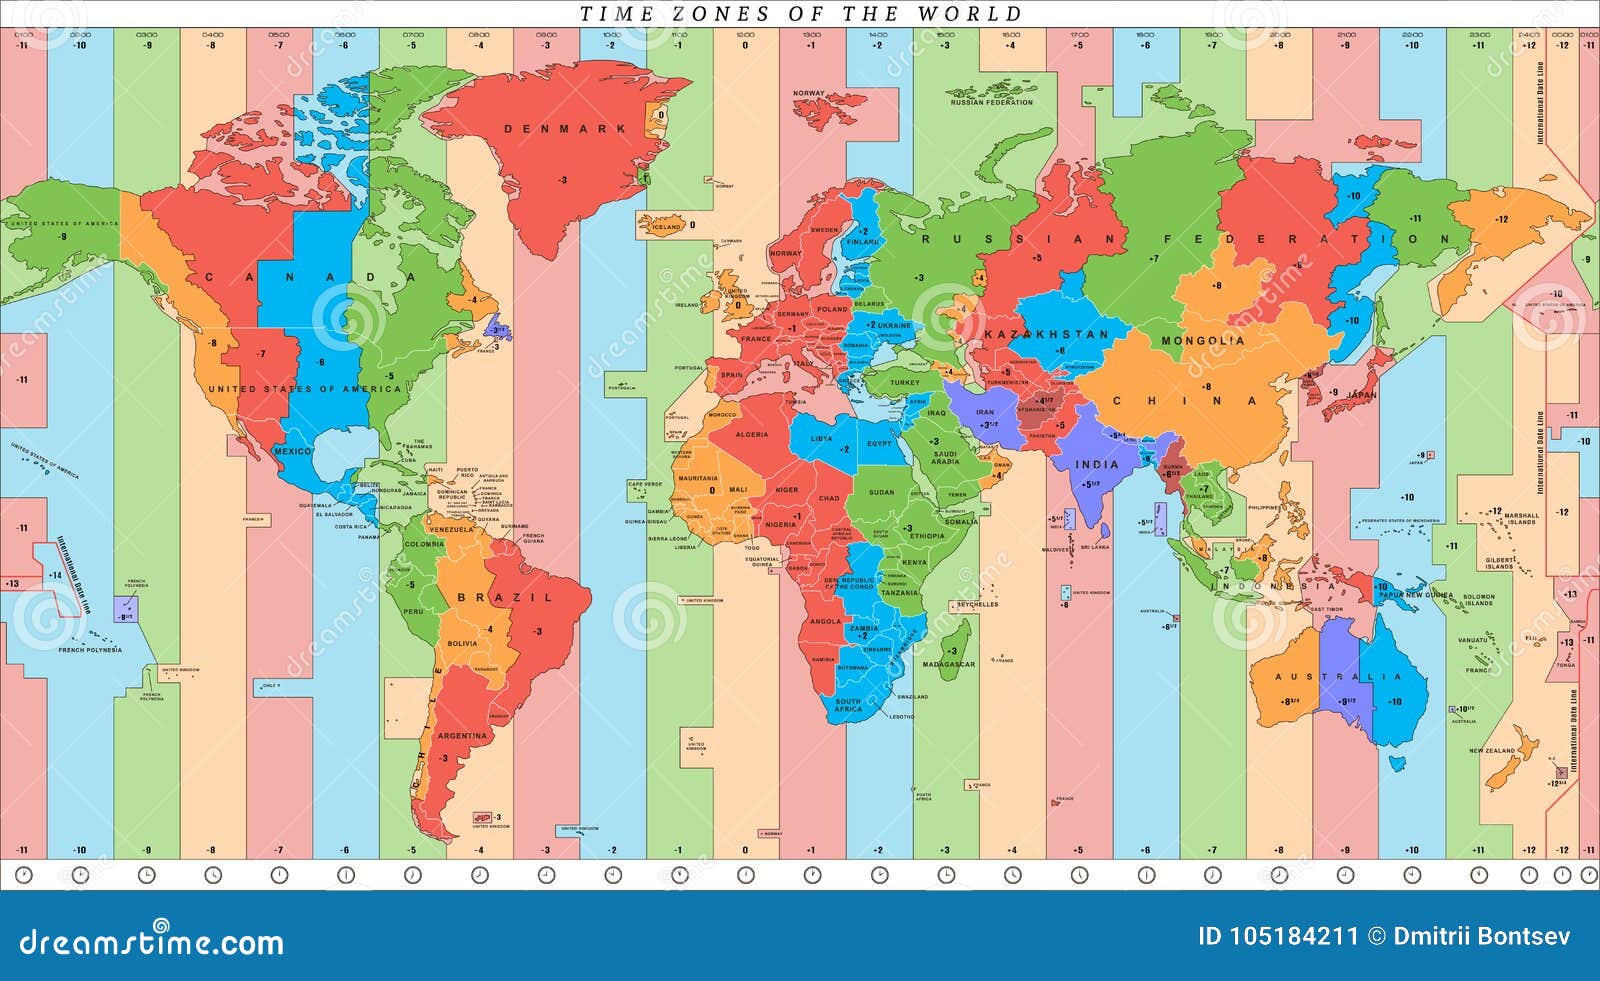 Сколько часовых поясов между москвой и владивостоком. Токио на карте часовых поясов. Временные зоны.